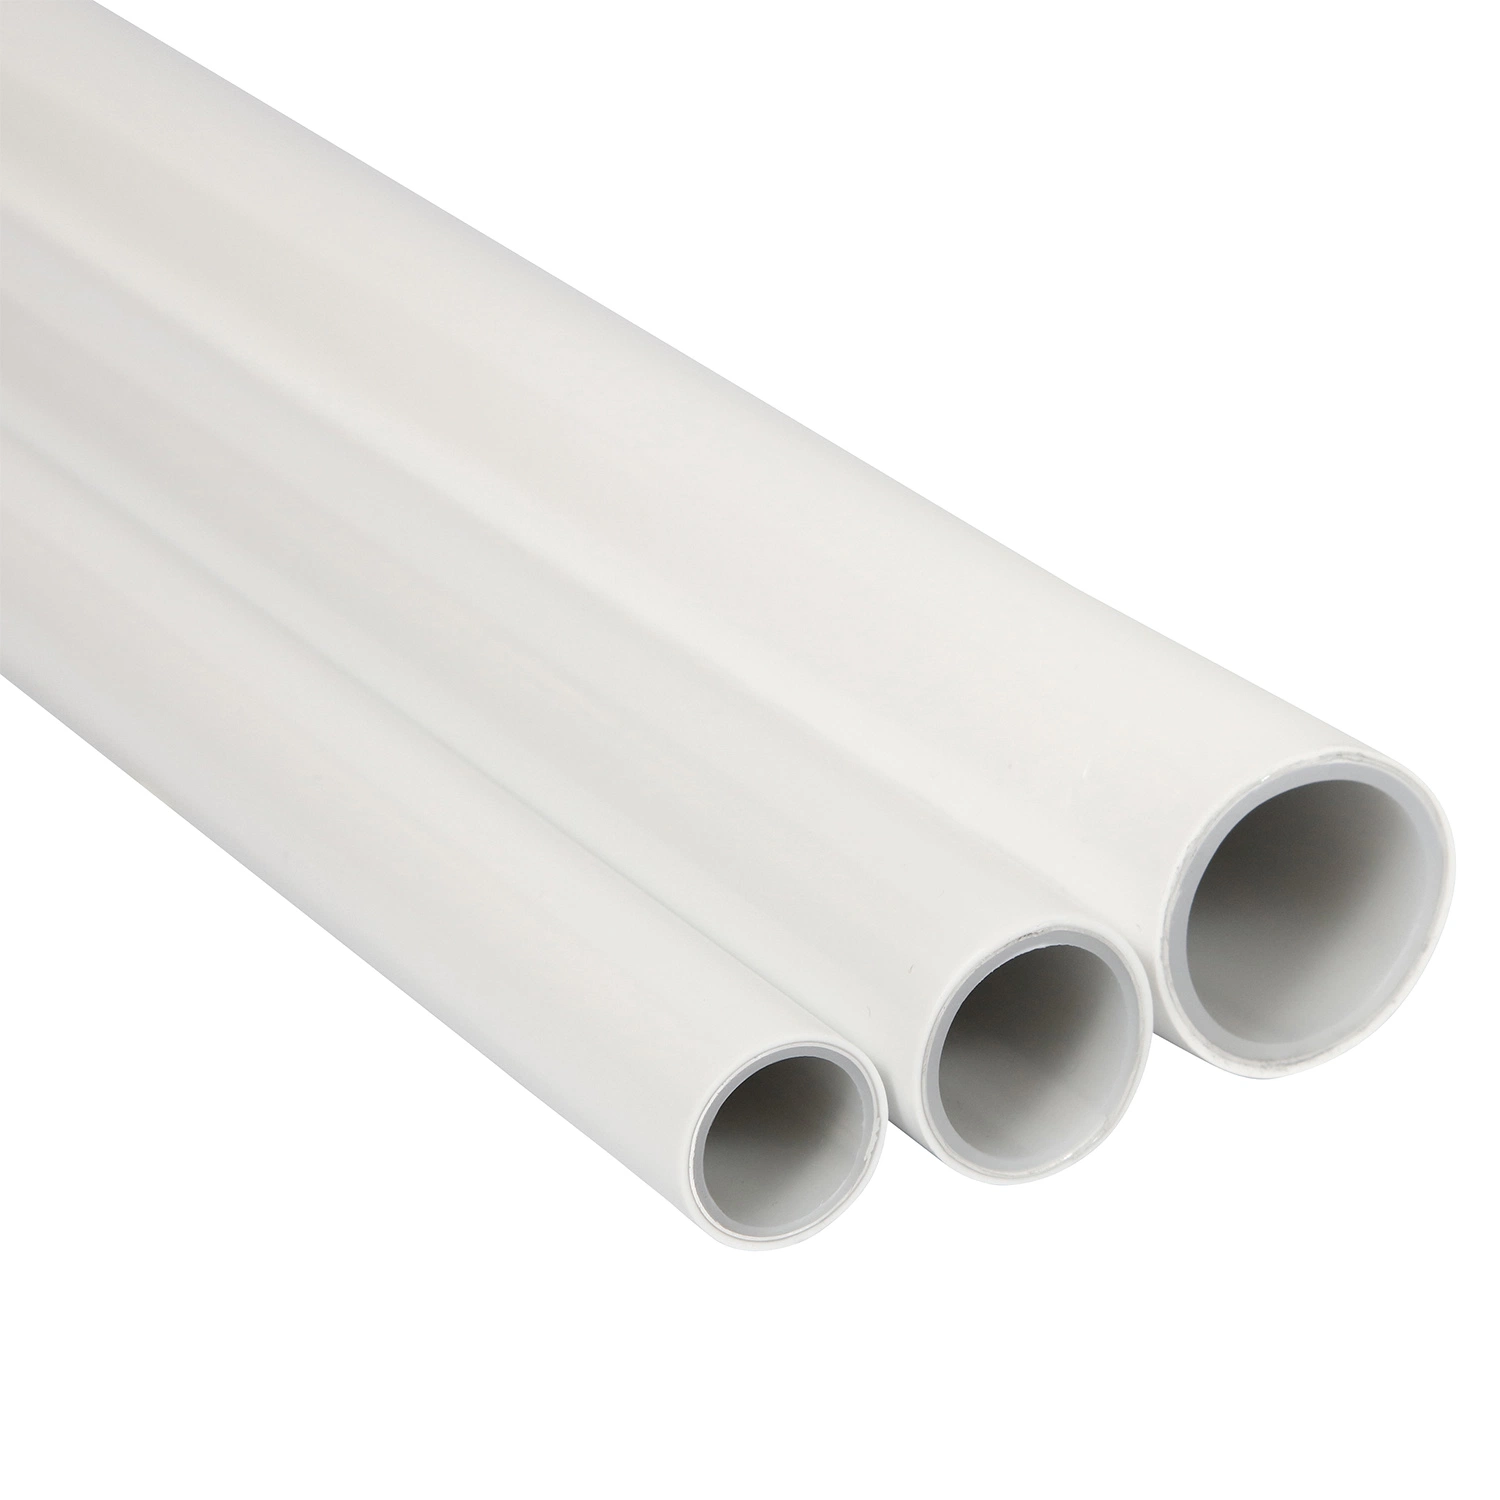 Tubo de alumínio composto de alumínio multicamada Pex-Al-Pex tubo de revestimento de plástico para Fornecimento de água e tubo de plástico de aquecimento sob o piso